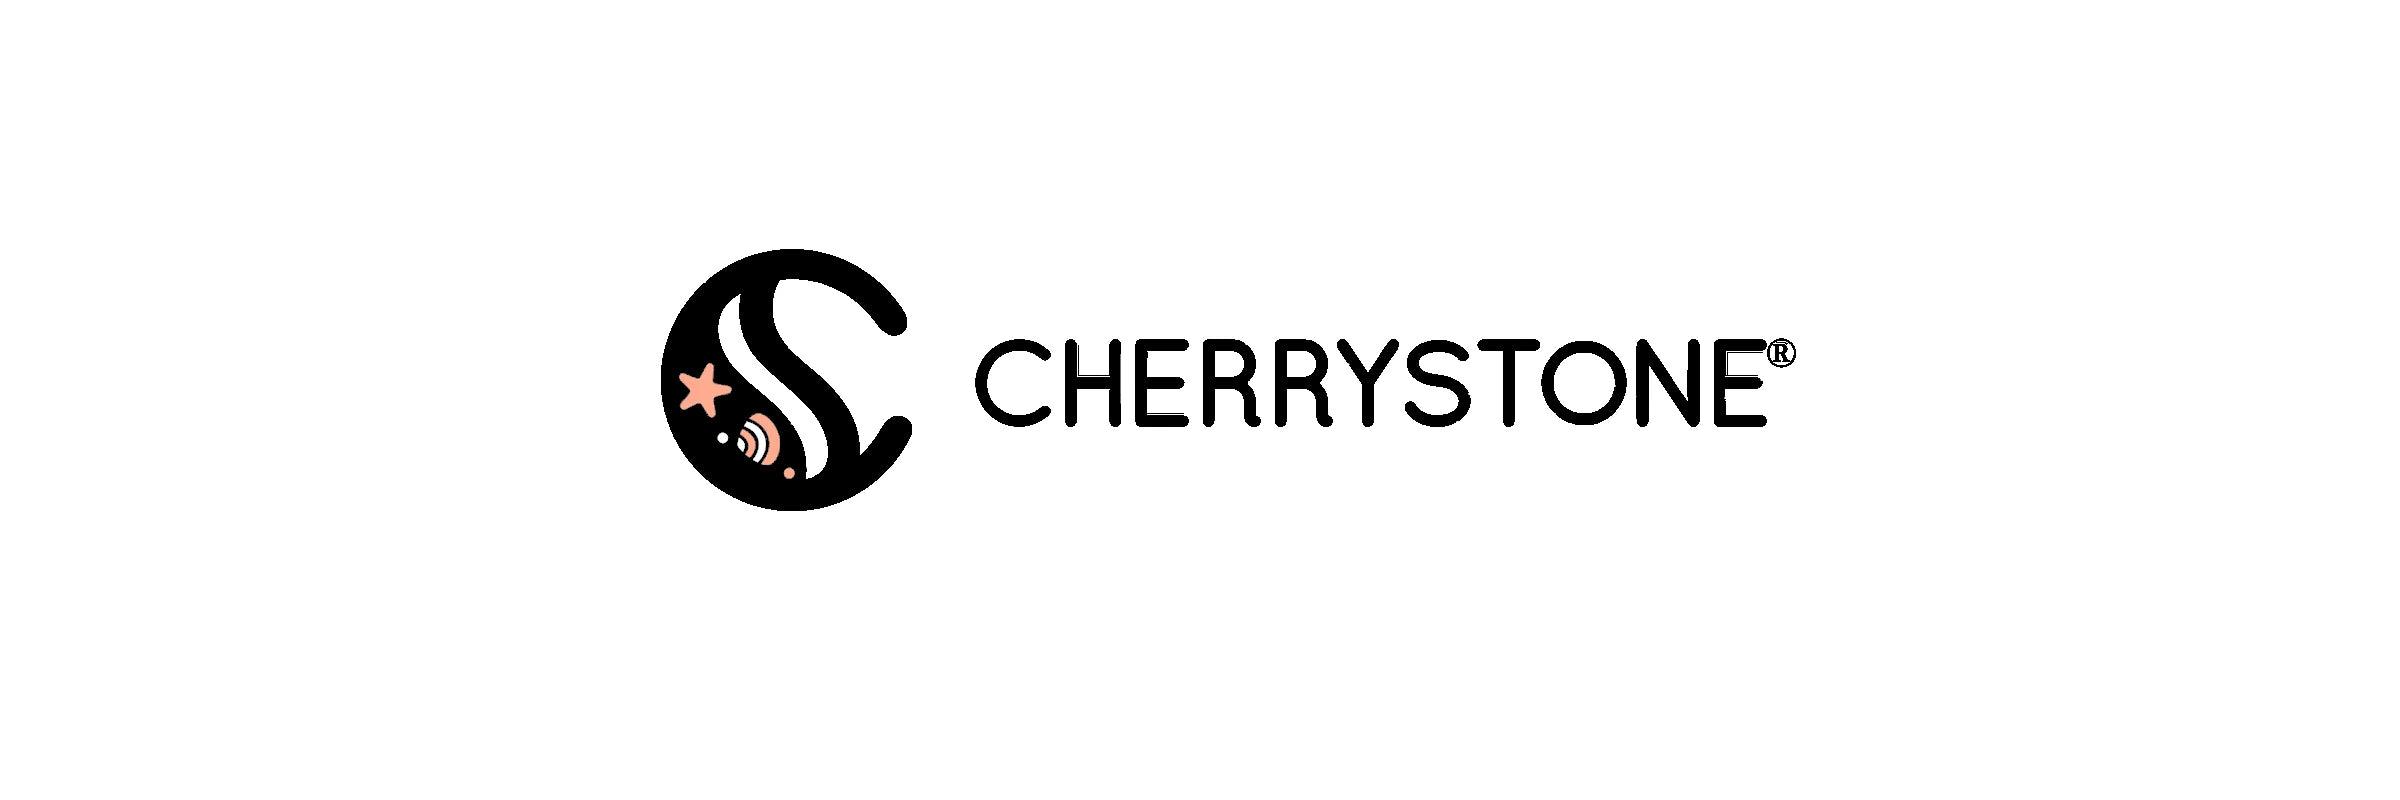 It's Cherry Stone